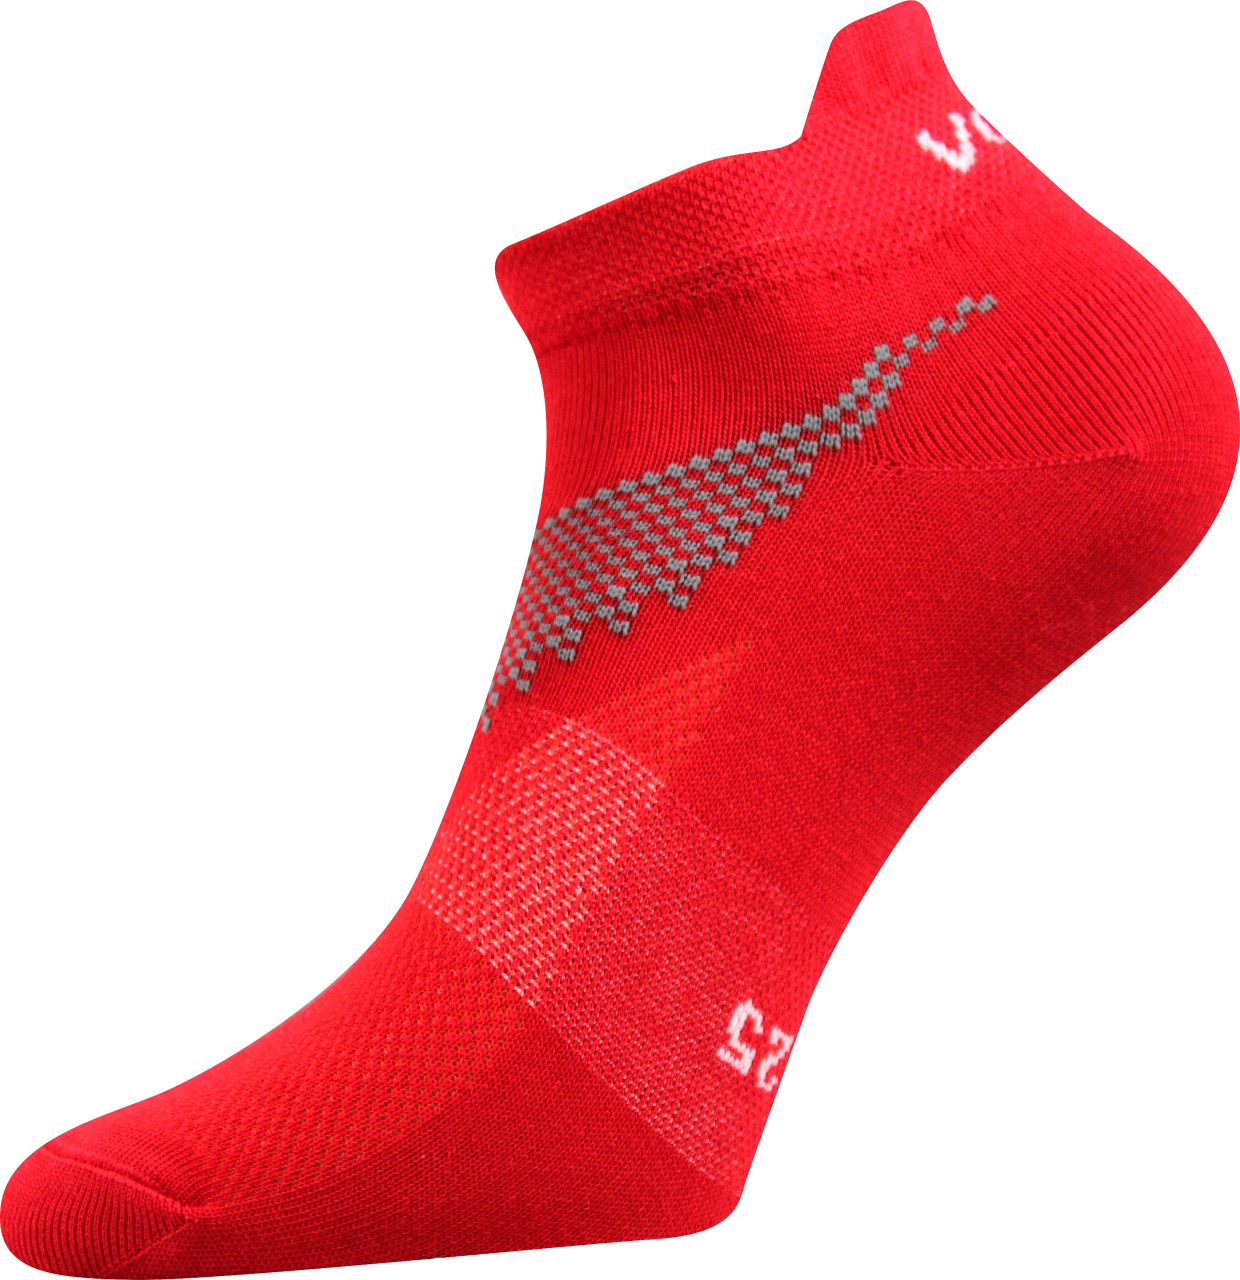 Ponožky sportovní nízké Voxx Iris - červené, 43-46